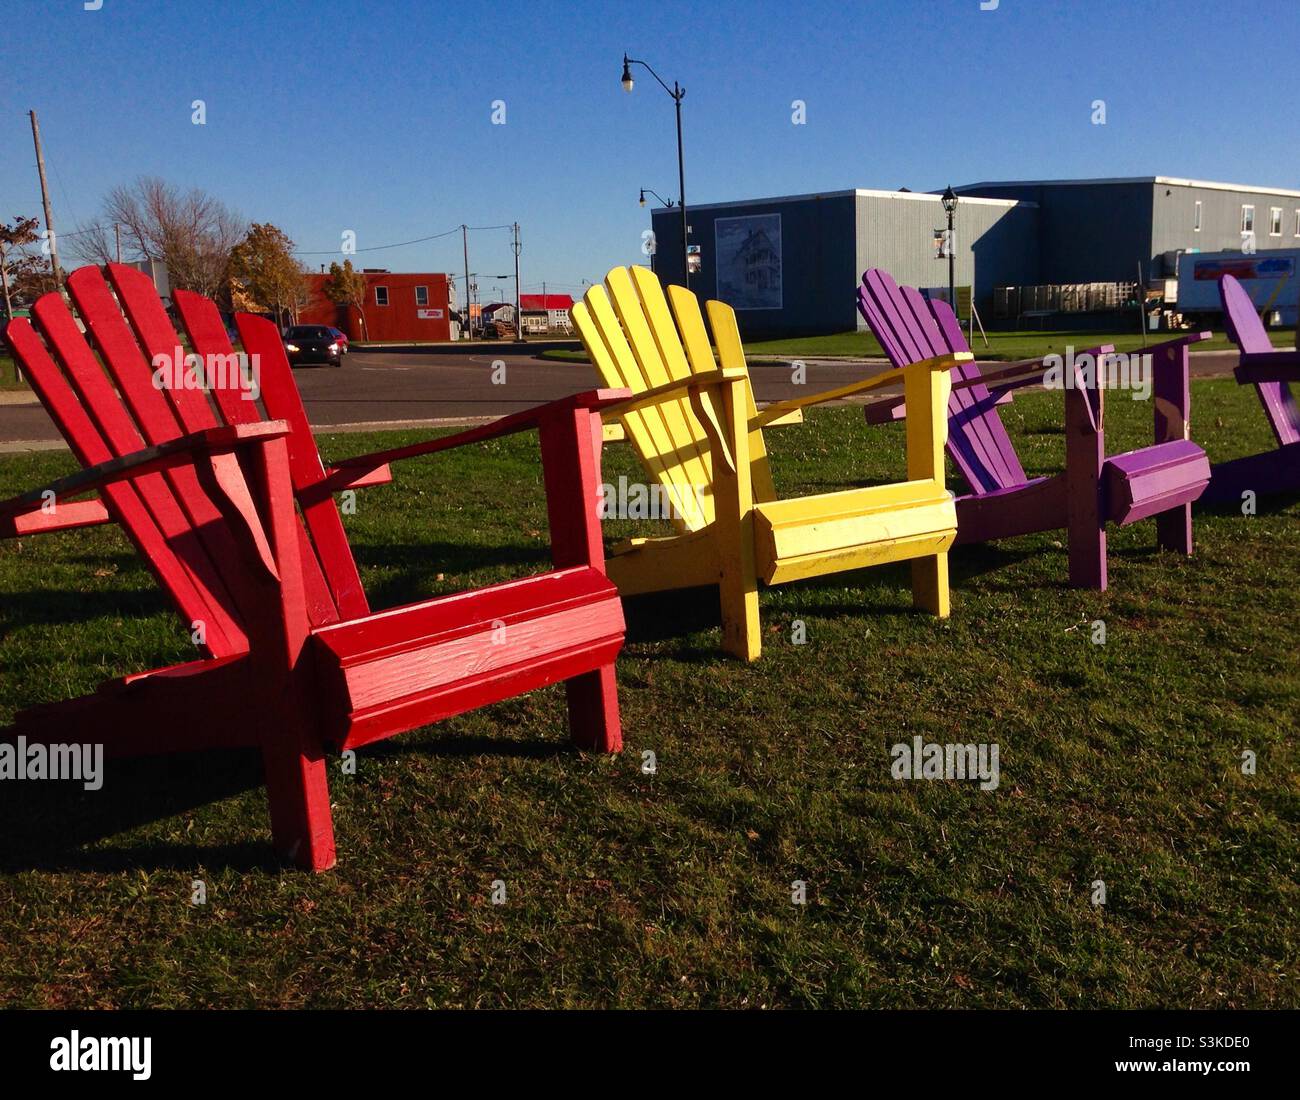 Chaises de style Adirondack peintes différentes couleurs dans un petit parc de la côte est, Canada Banque D'Images